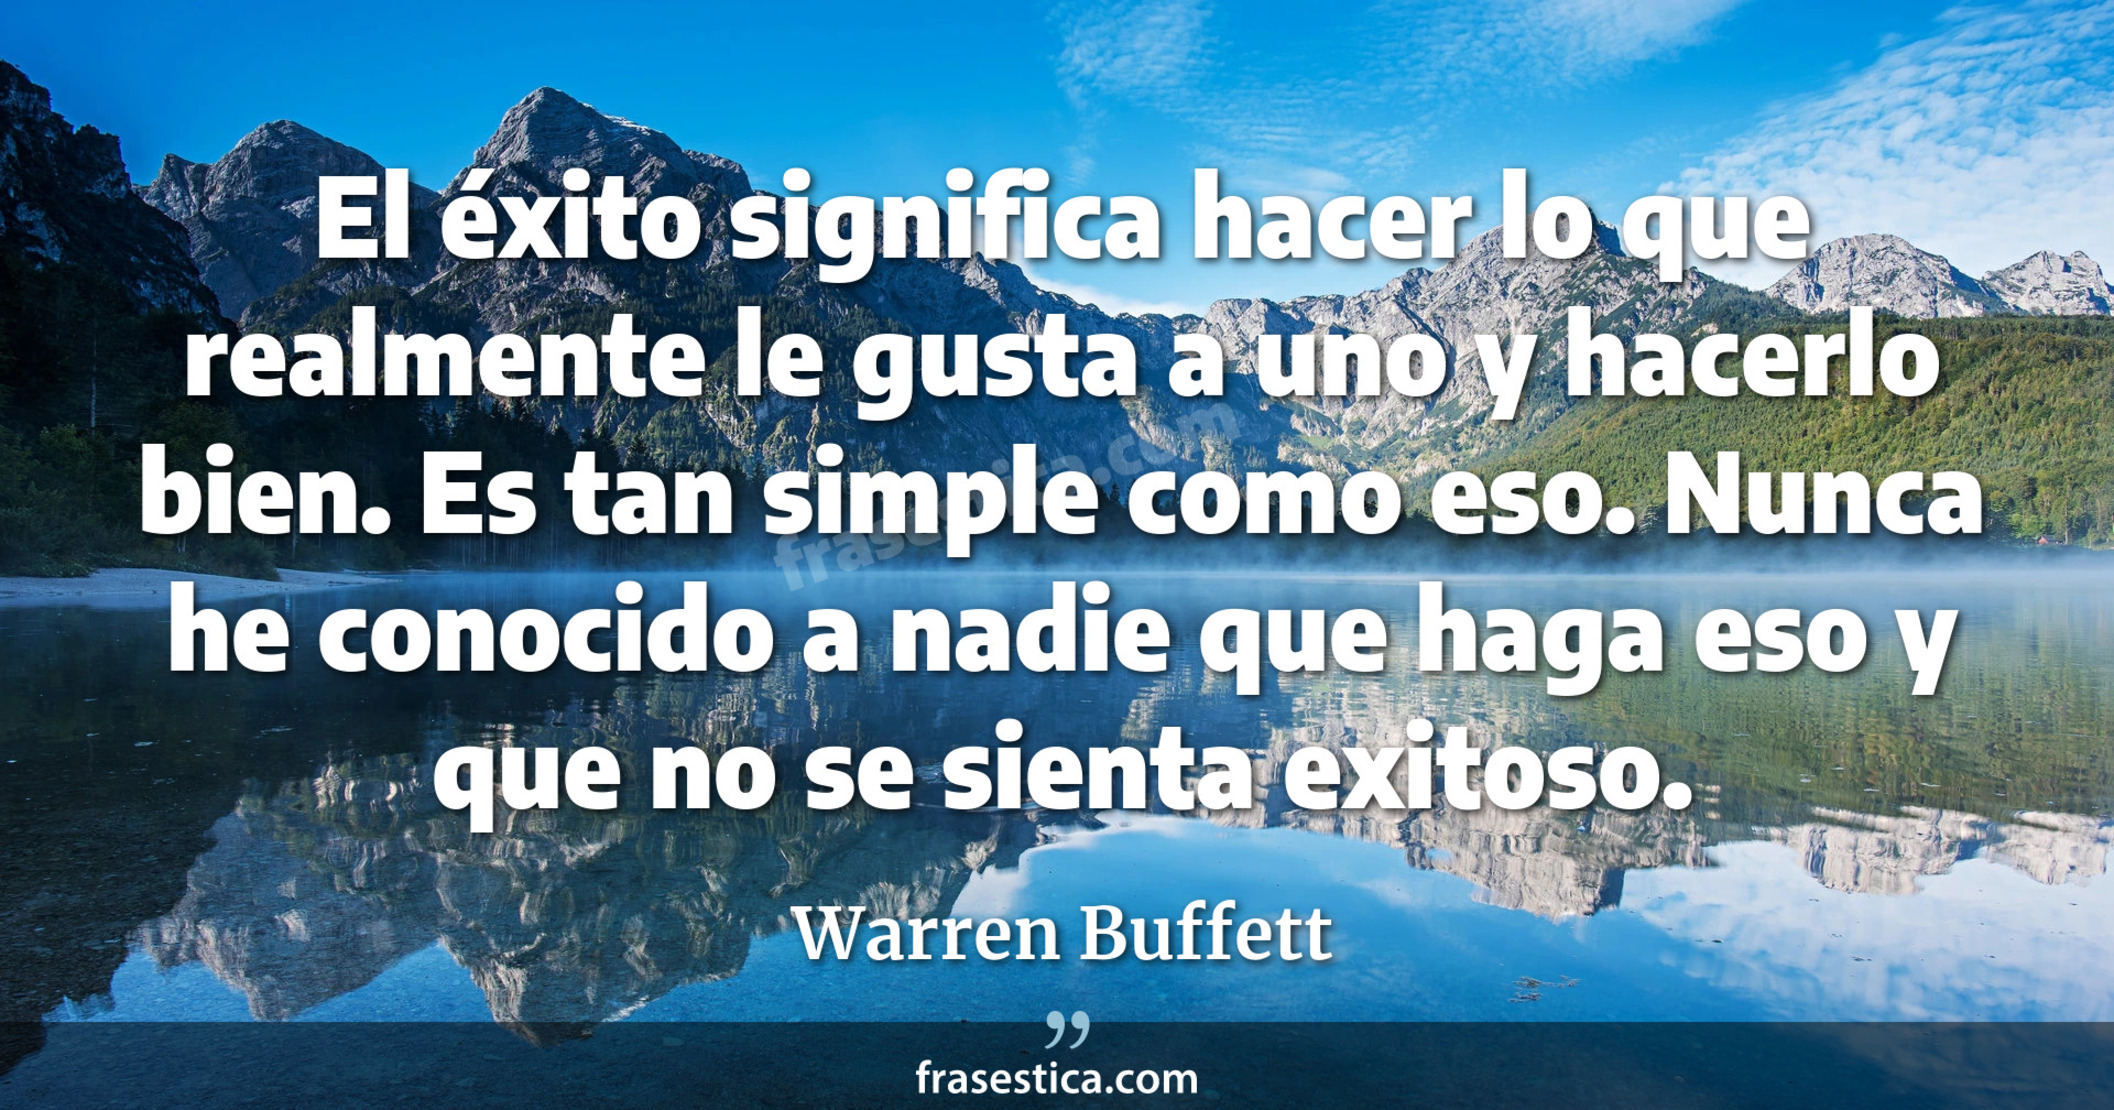 El éxito significa hacer lo que realmente le gusta a uno y hacerlo bien. Es tan simple como eso. Nunca he conocido a nadie que haga eso y que no se sienta exitoso. - Warren Buffett